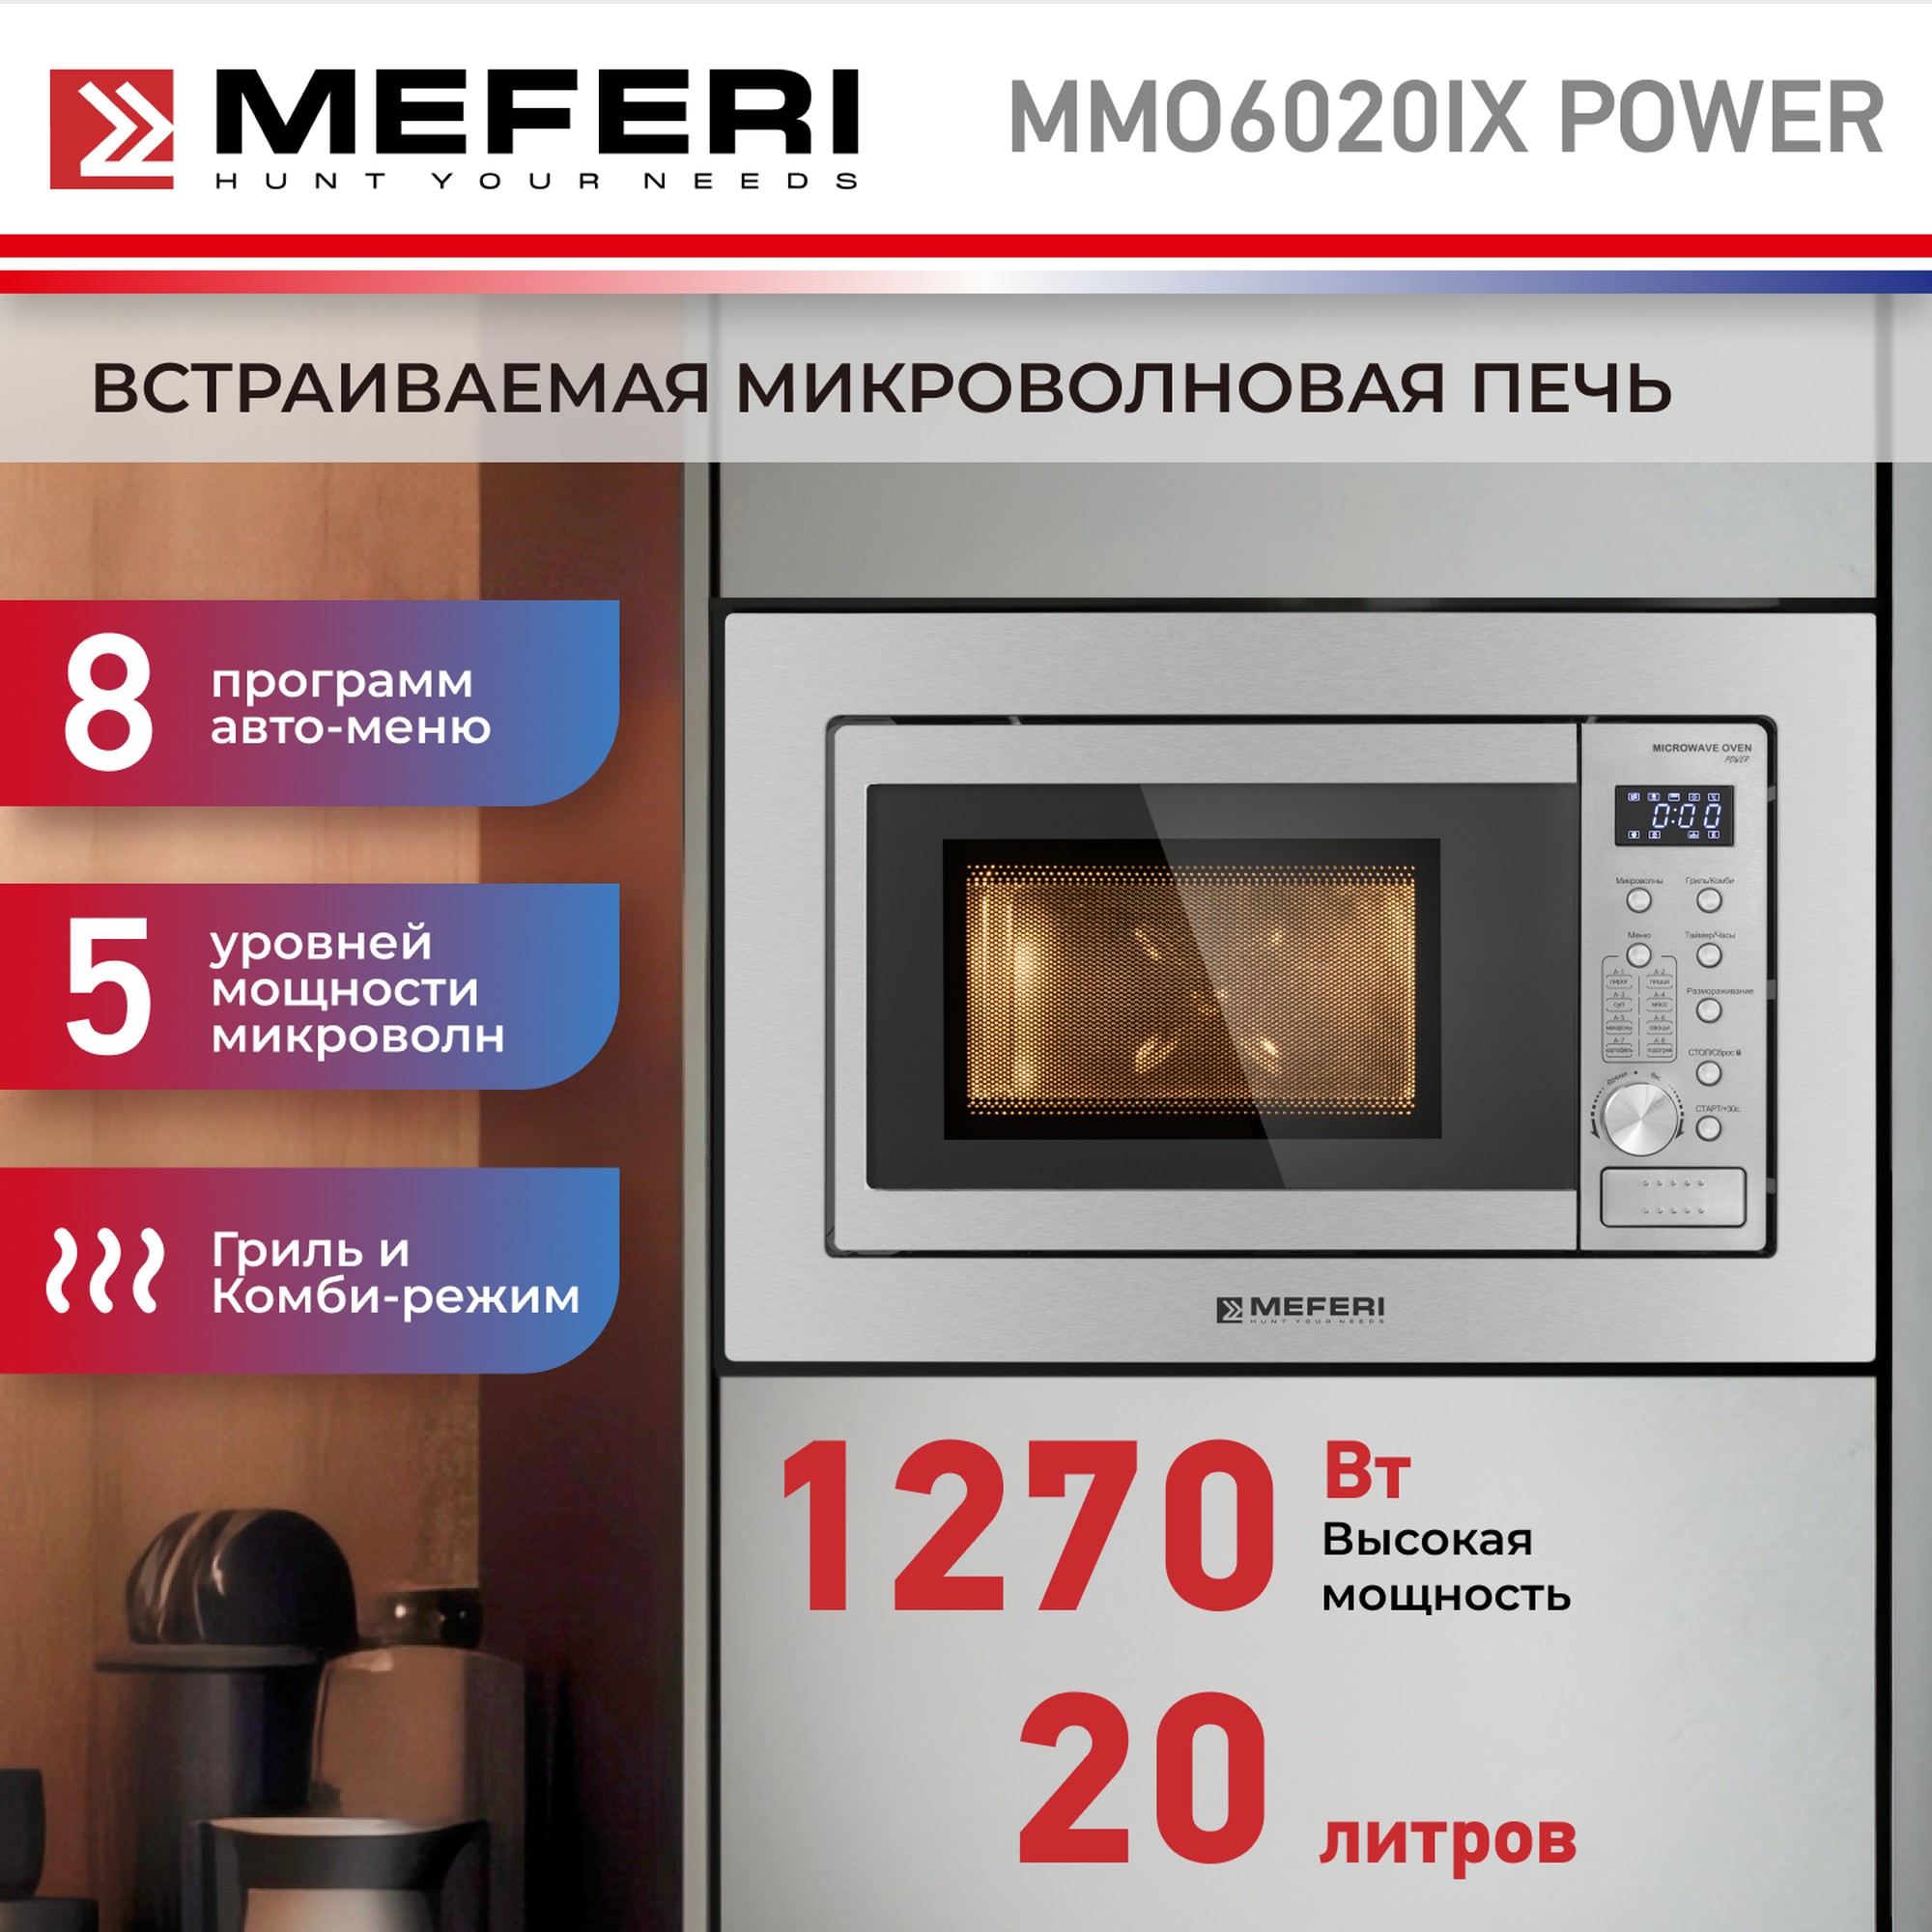 Встраиваемая микроволновая печь MEFERI MMO6020IX POWER встраиваемая микроволновая печь meferi mmo6020ix power серебристый